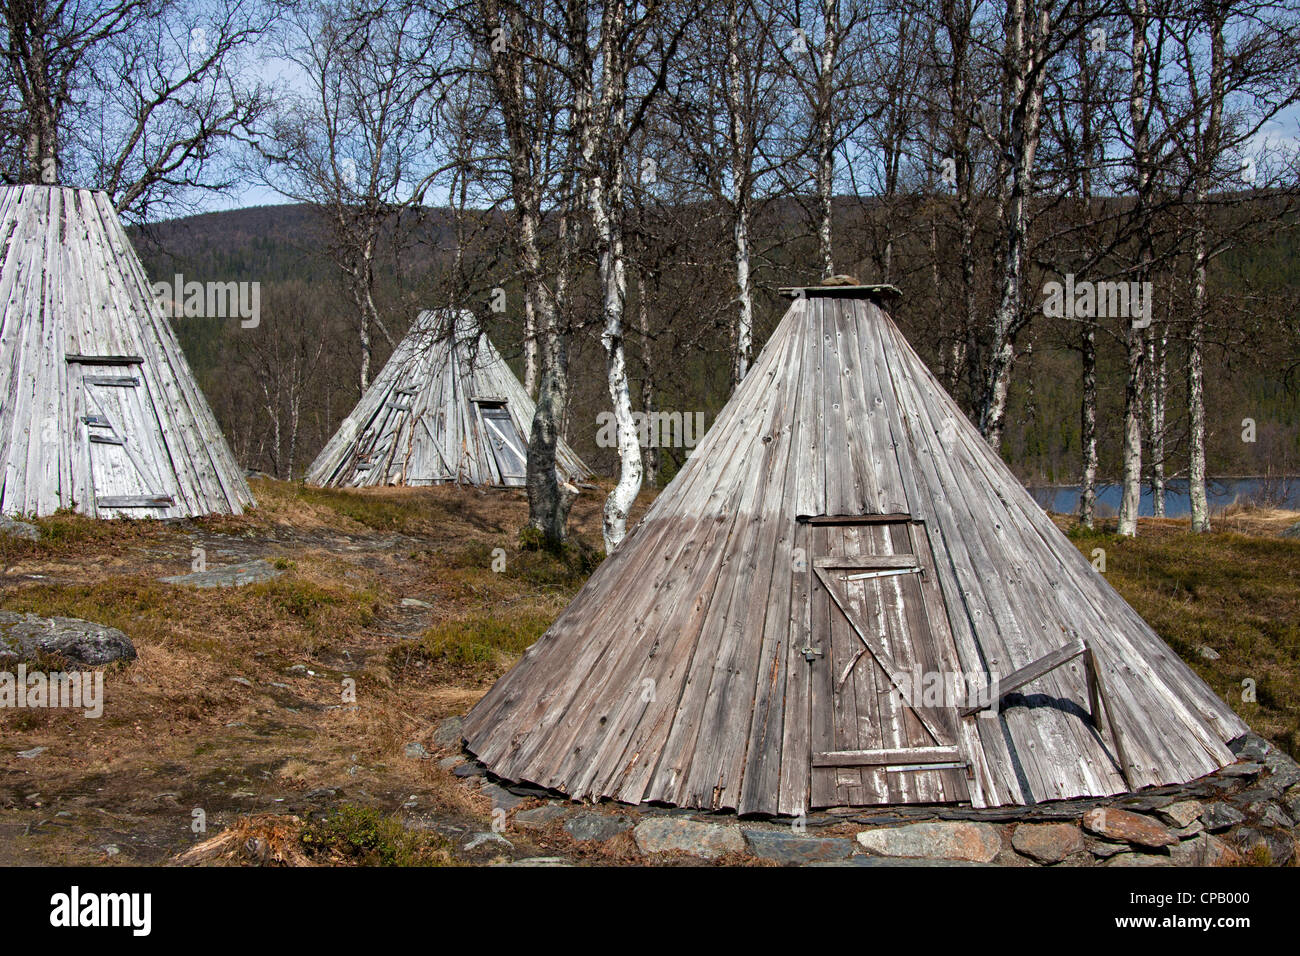 Goahti / Kota, traditionelle Sami Holzhütten in der Tundra, Lappland, Schweden Stockfoto